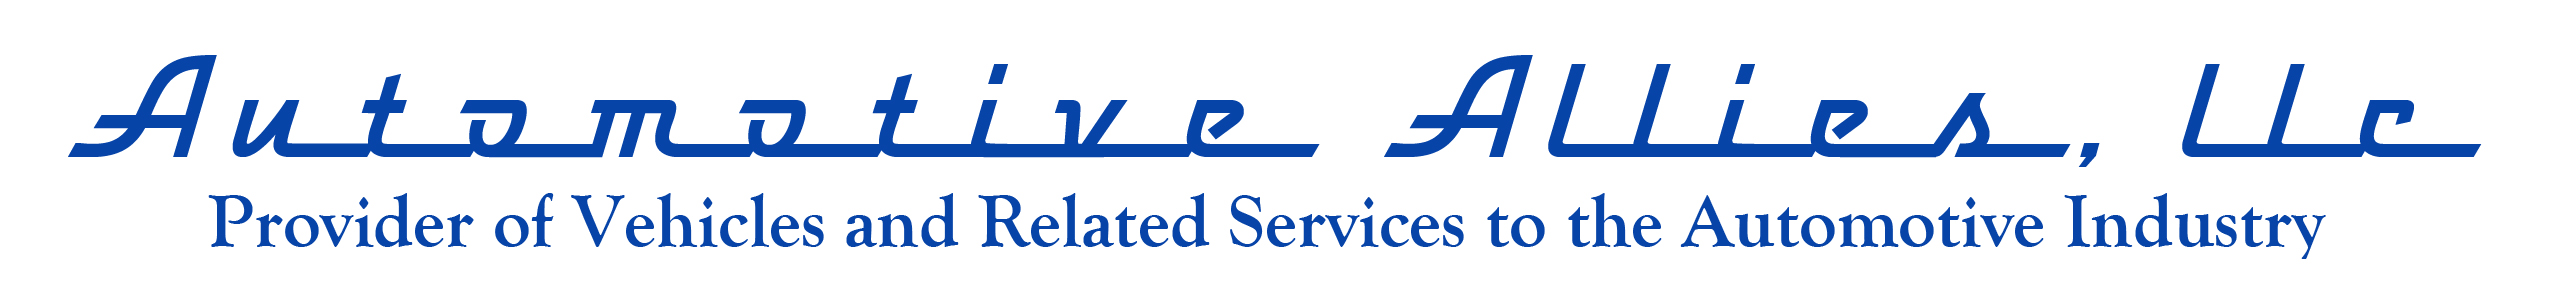 Automotive Allies, LLC. Logo